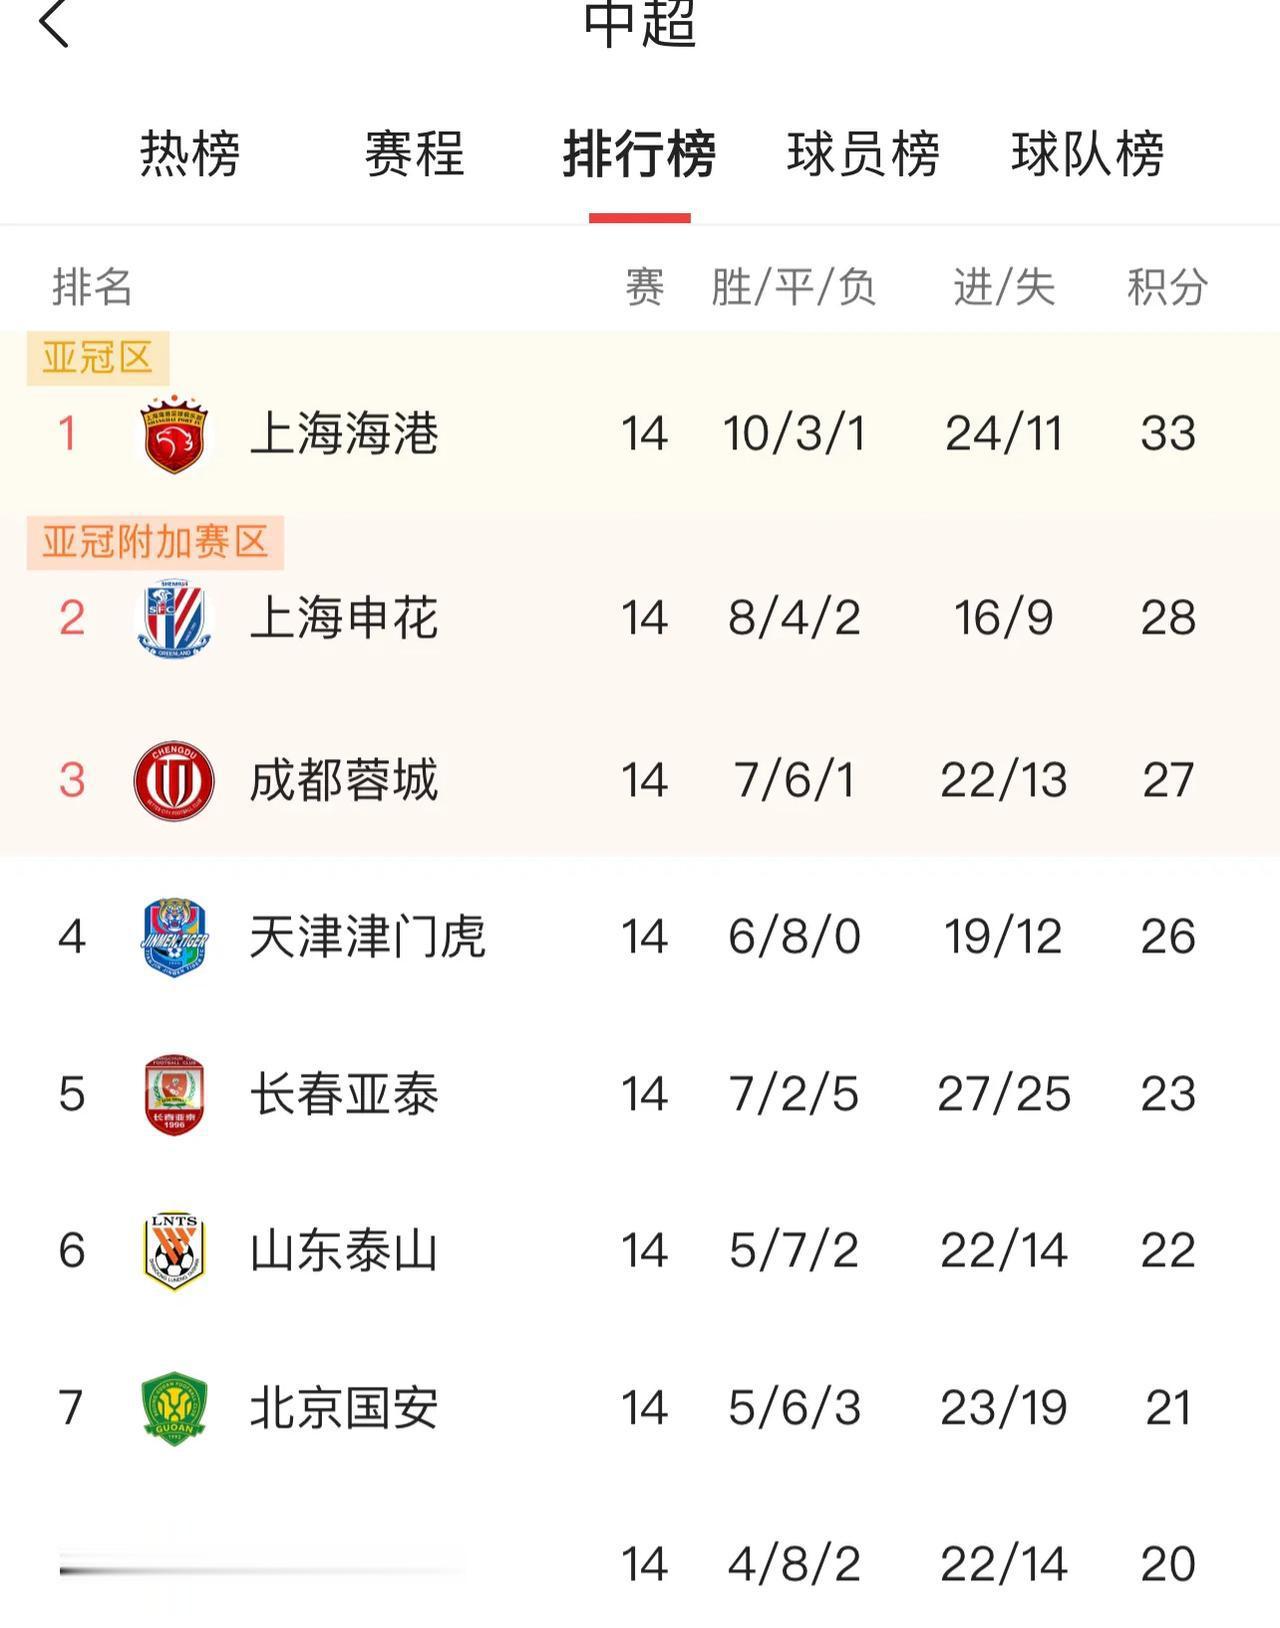 中超联赛过半，综合各方面分析！
一、夺冠球队
1、上海海港 80%，今年的海港顺(3)